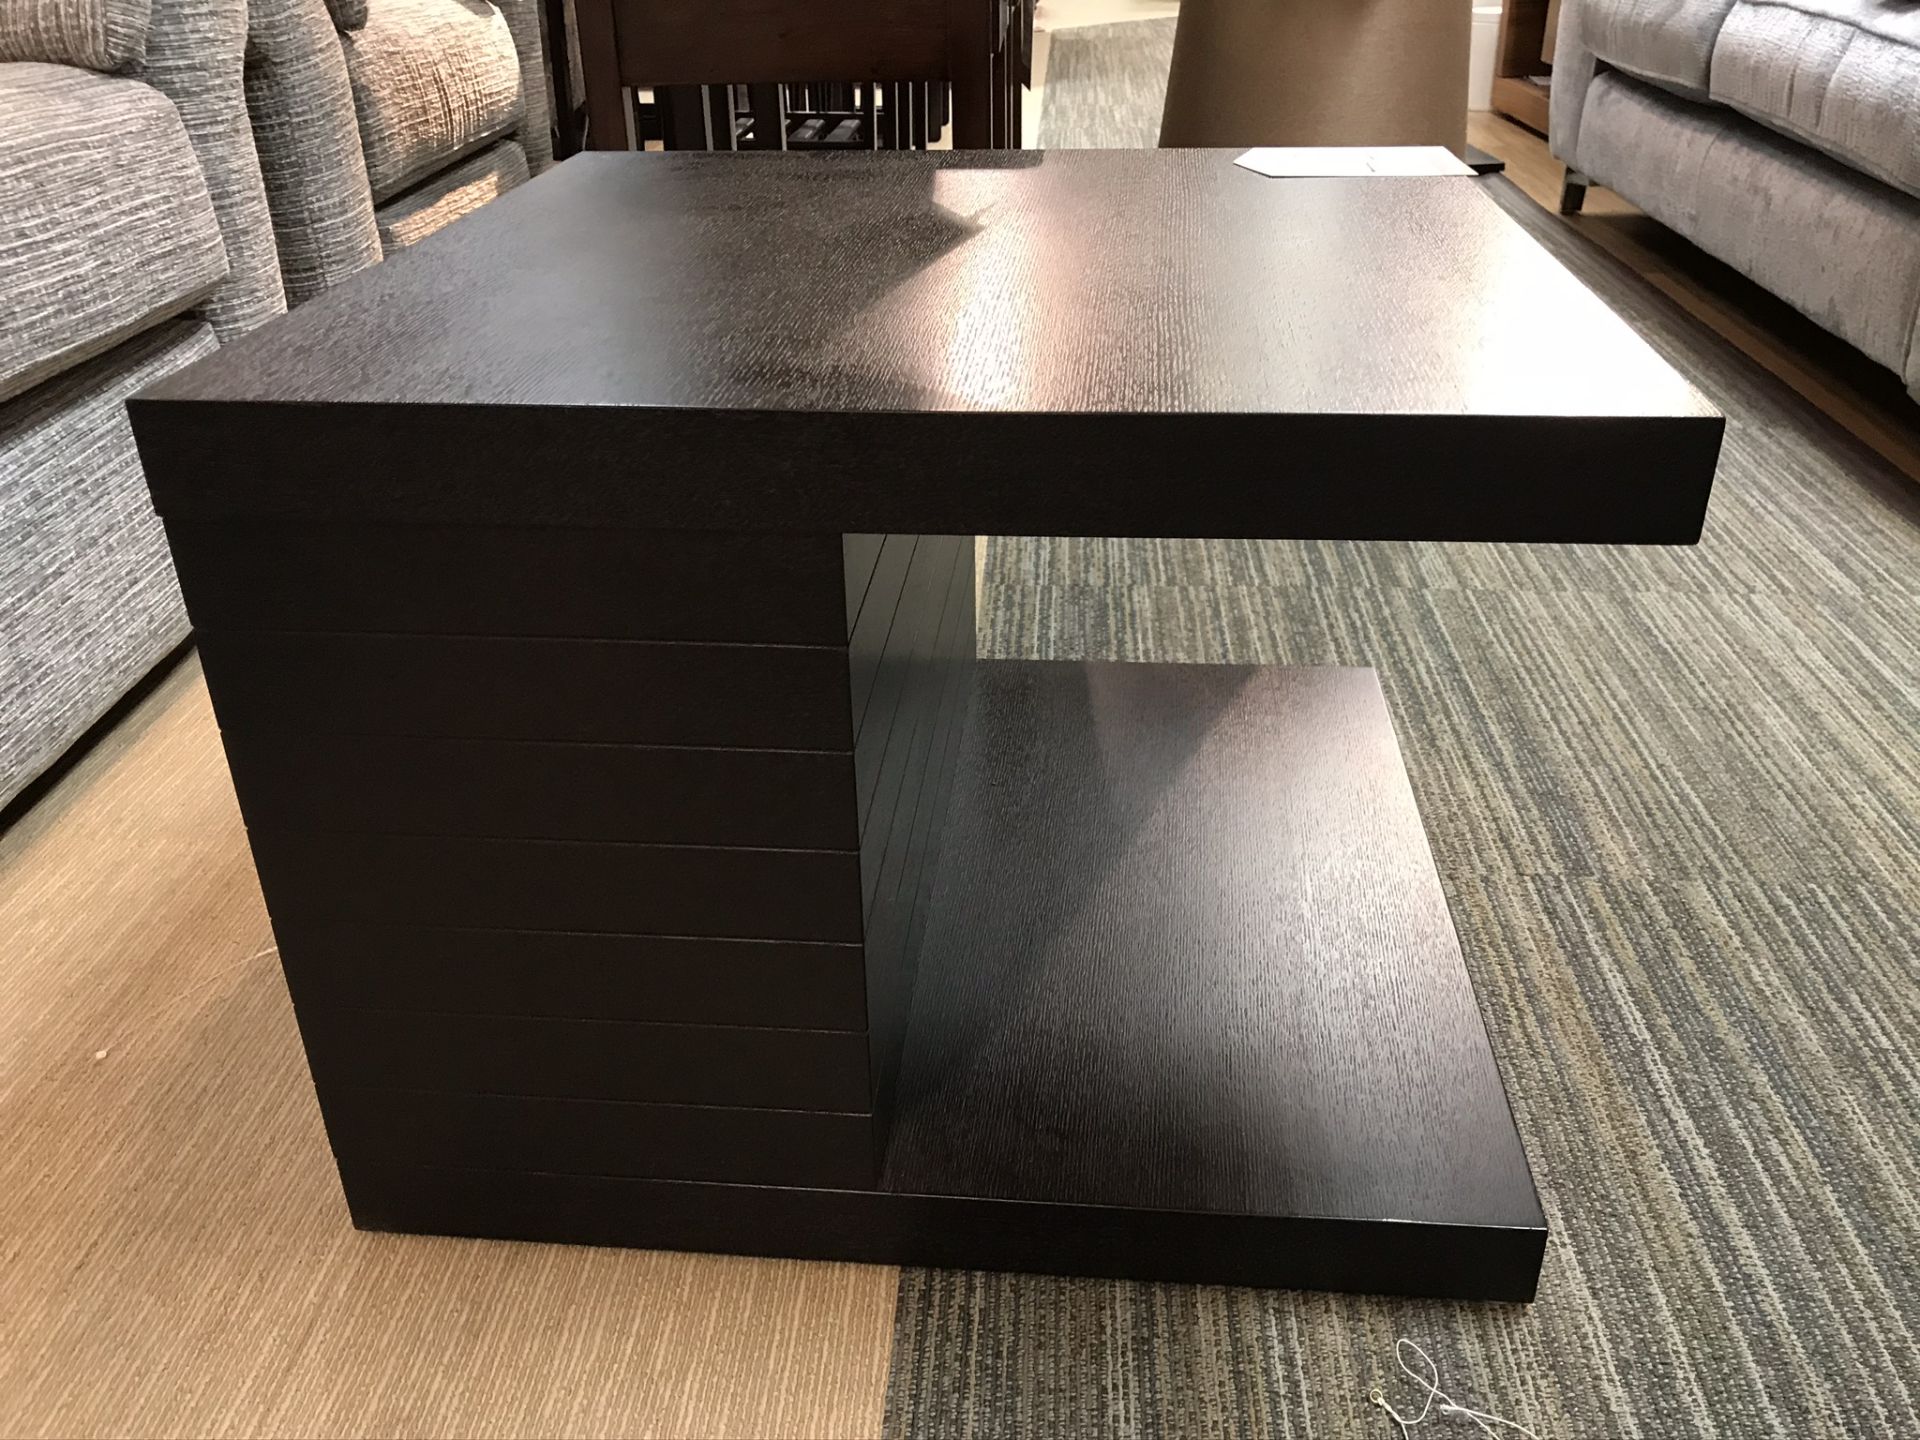 Ex Display Set of 2 Dark Brown Modern Lamp Tables w/ Undershelf - Image 2 of 3